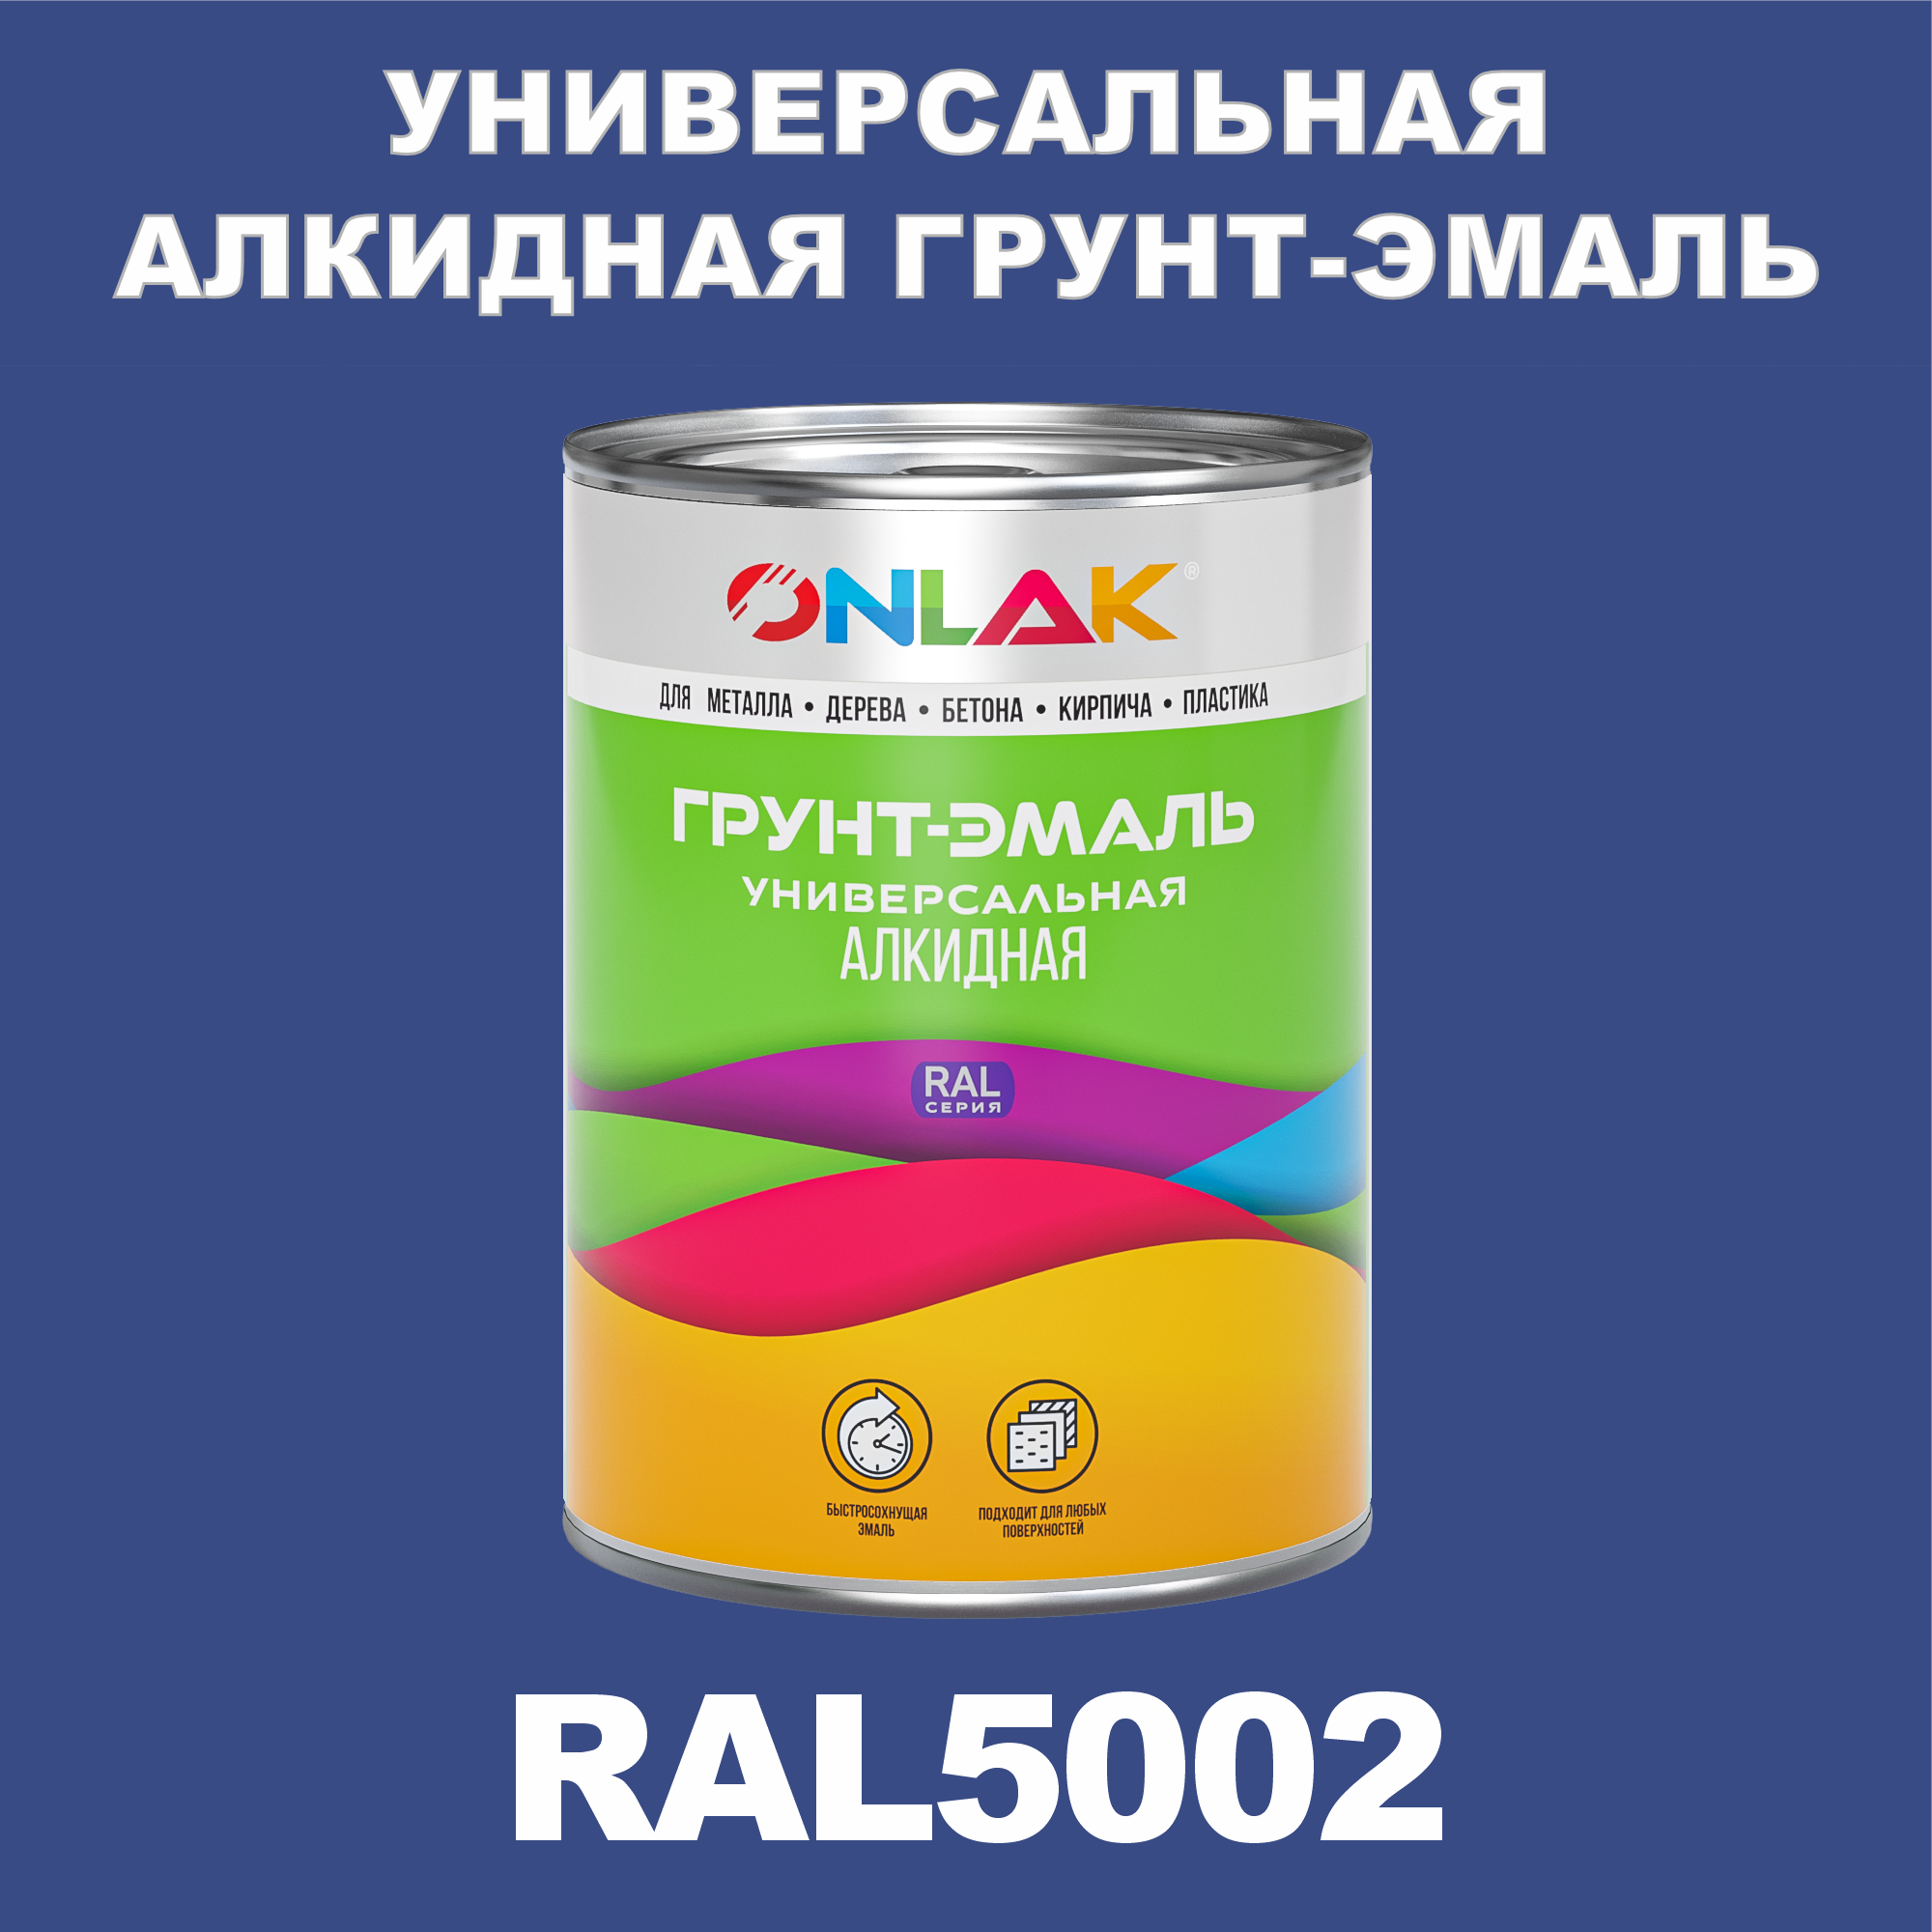 Грунт-эмаль ONLAK 1К RAL5002 антикоррозионная алкидная по металлу по ржавчине 1 кг грунт эмаль вит по ржавчине алкидная серая 1 8 кг